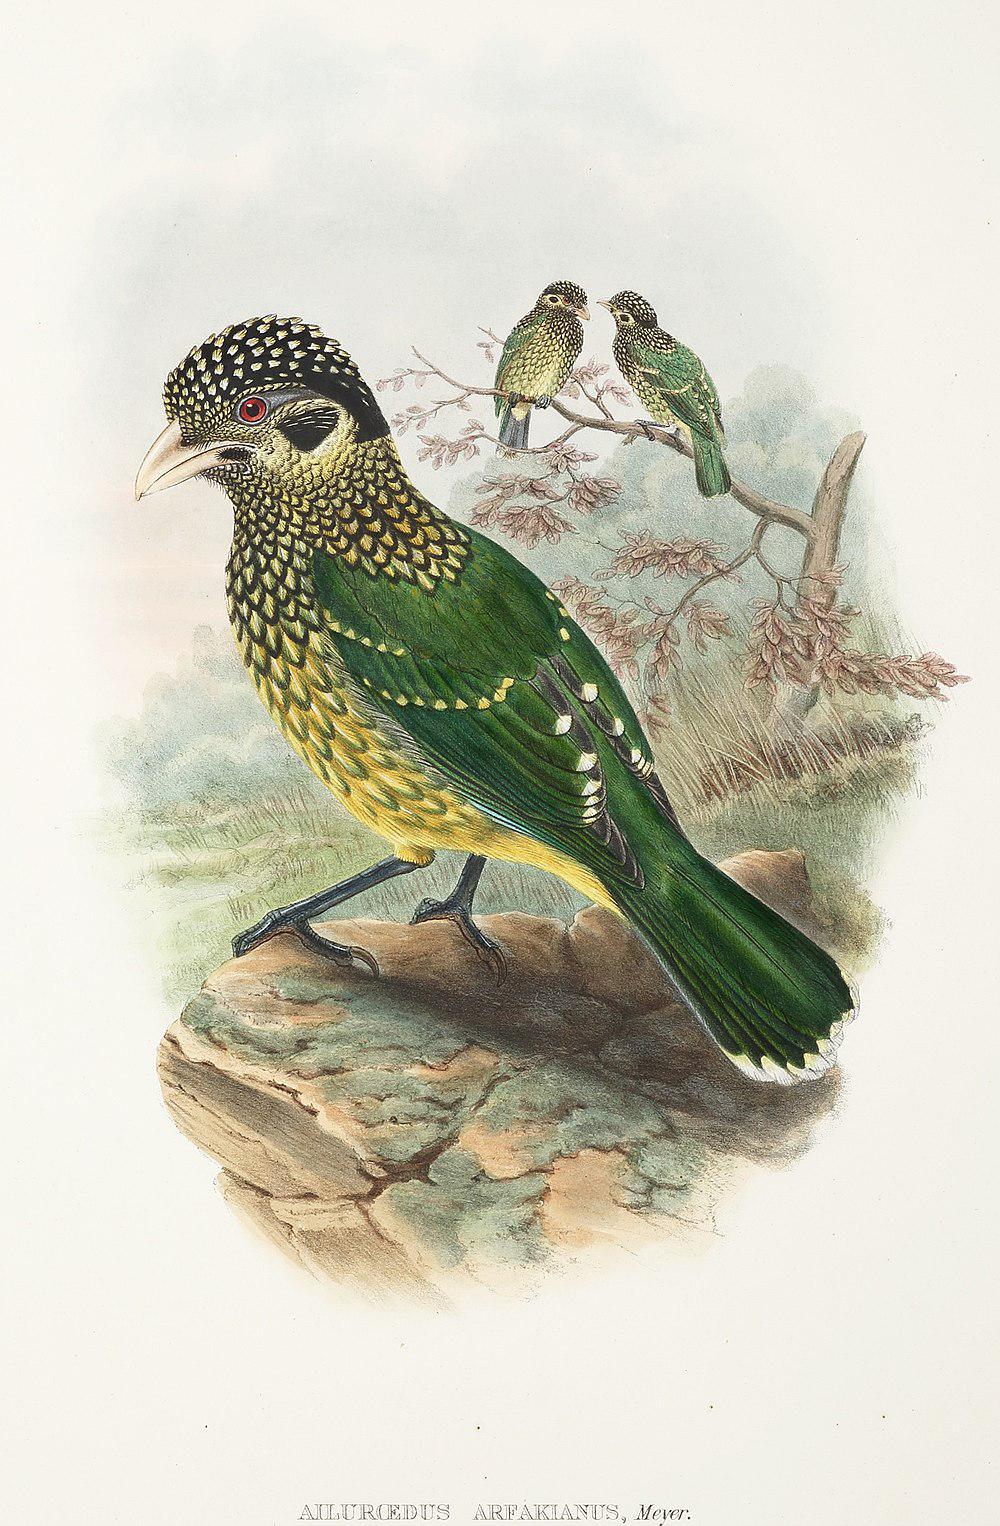 Arfak Catbird / Ailuroedus arfakianus